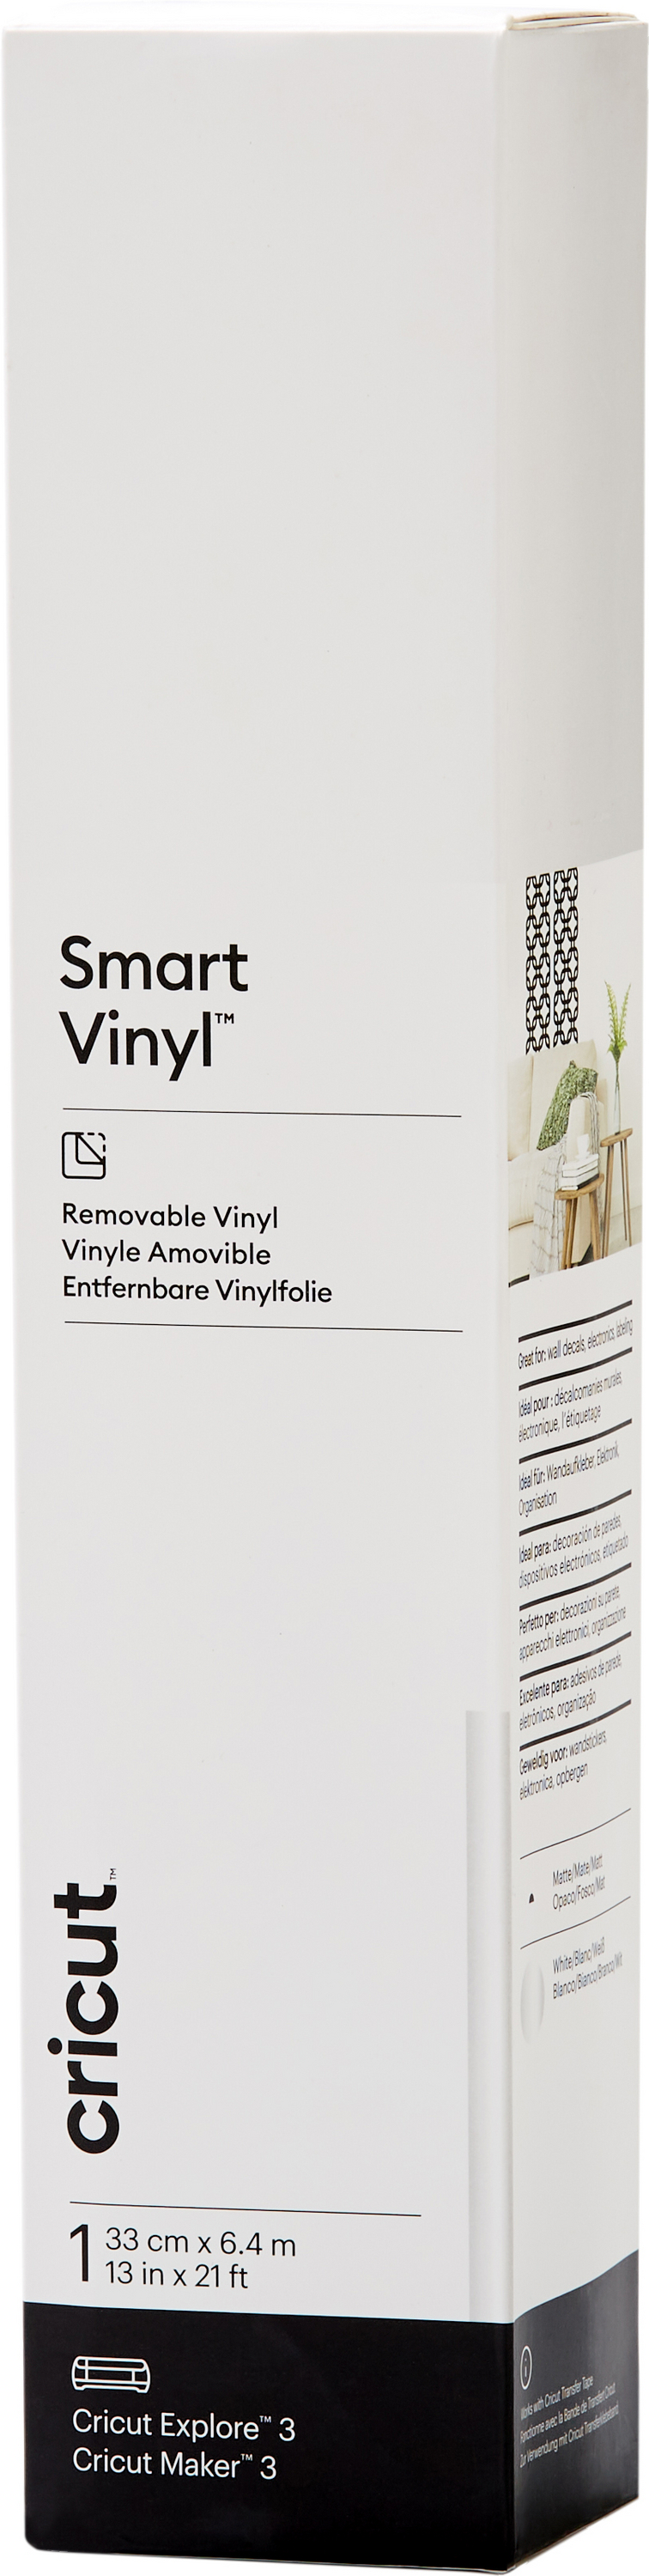 Smart Vinyl Removable Cricut 33 cm x 6.4 m